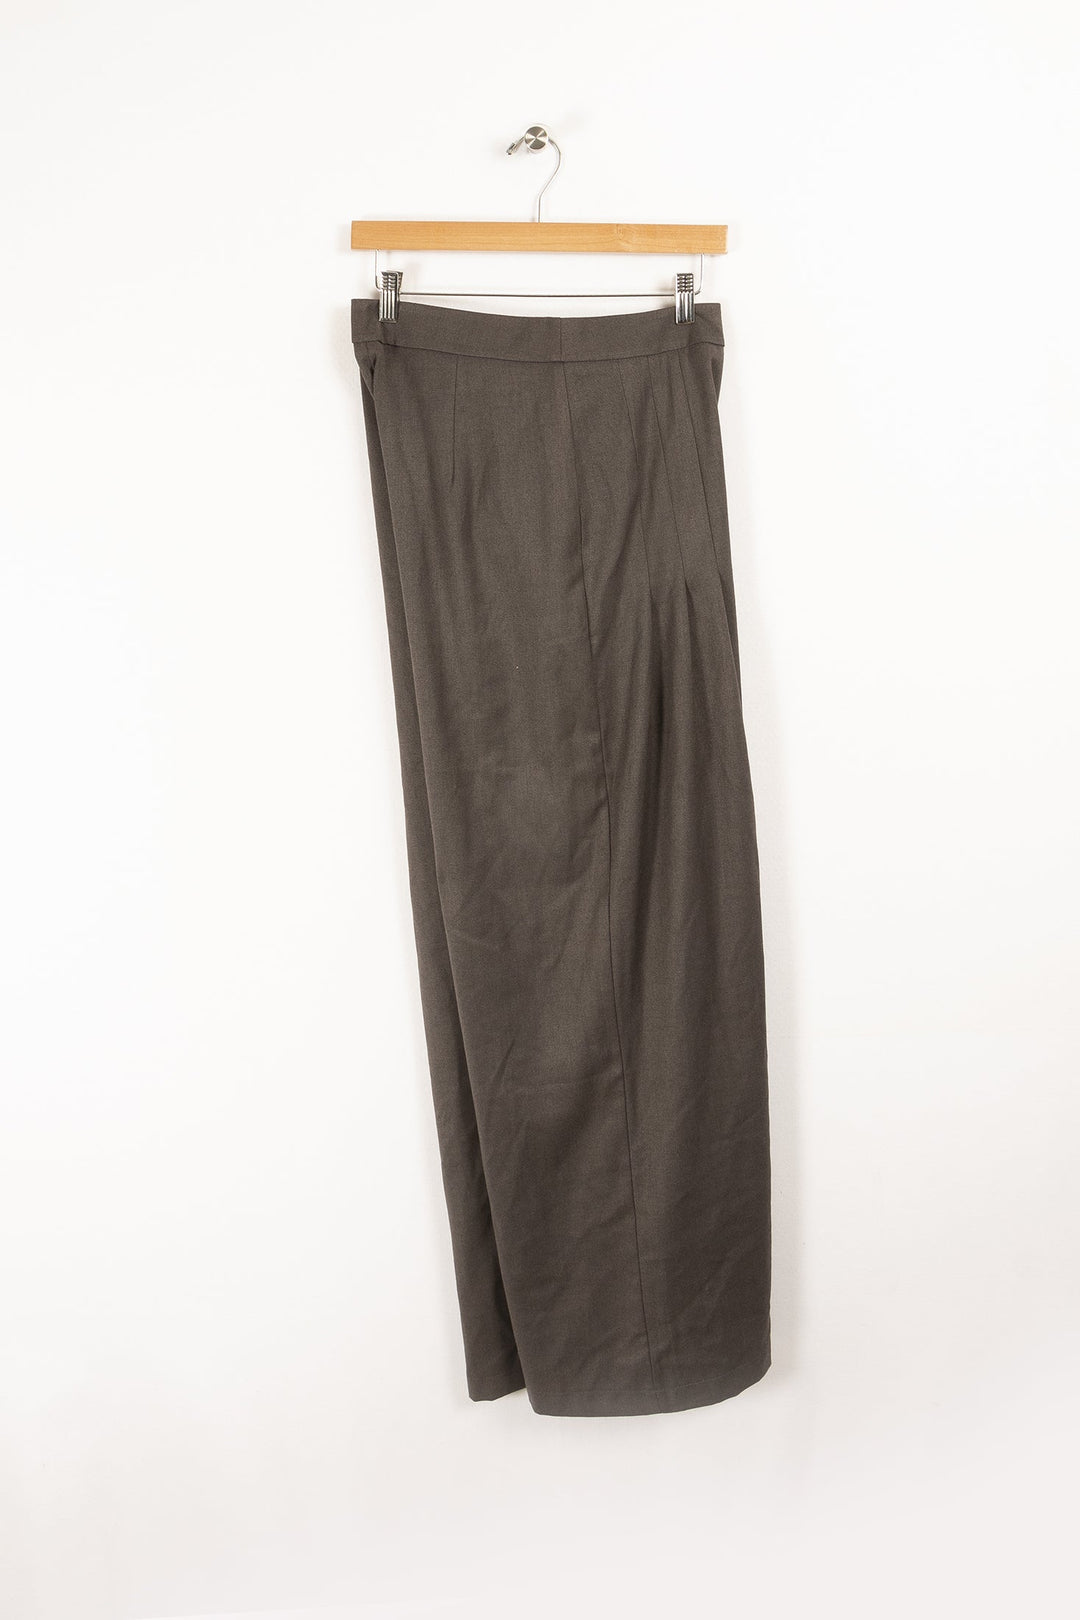 Pantalon - XL/42